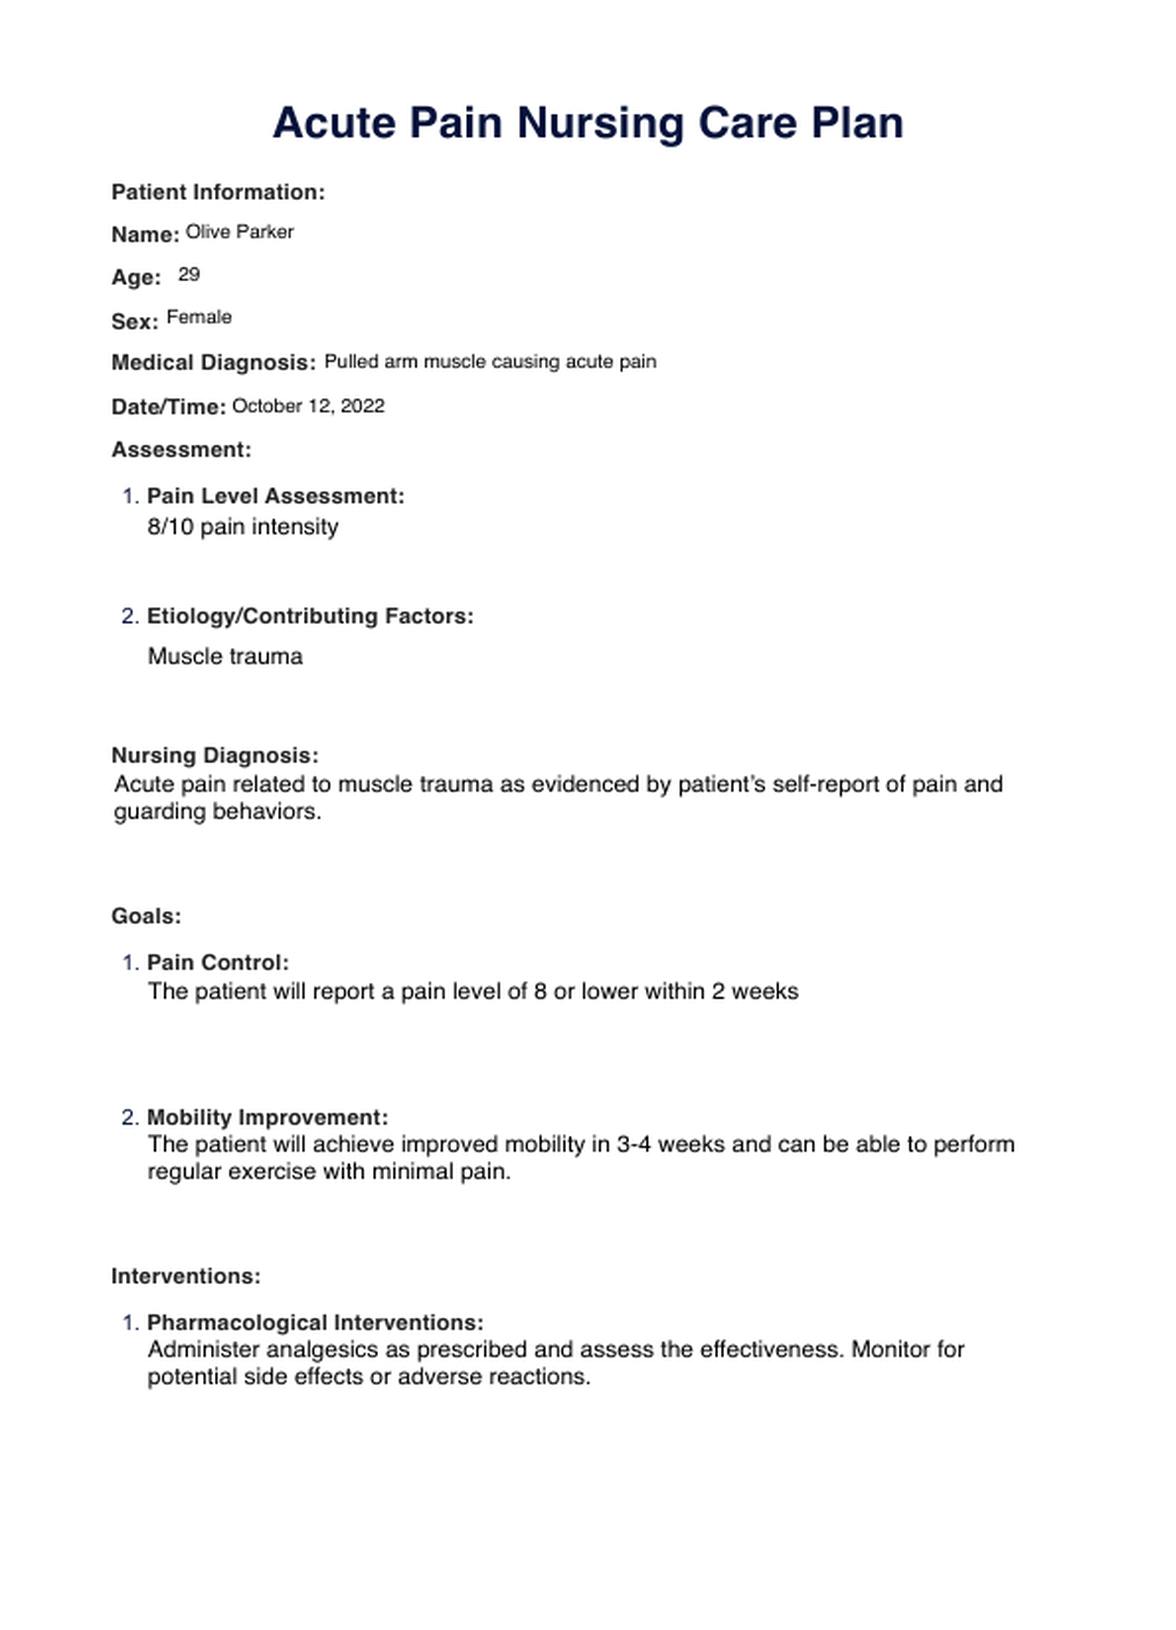 Acute Pain Nursing Care Plan PDF Example